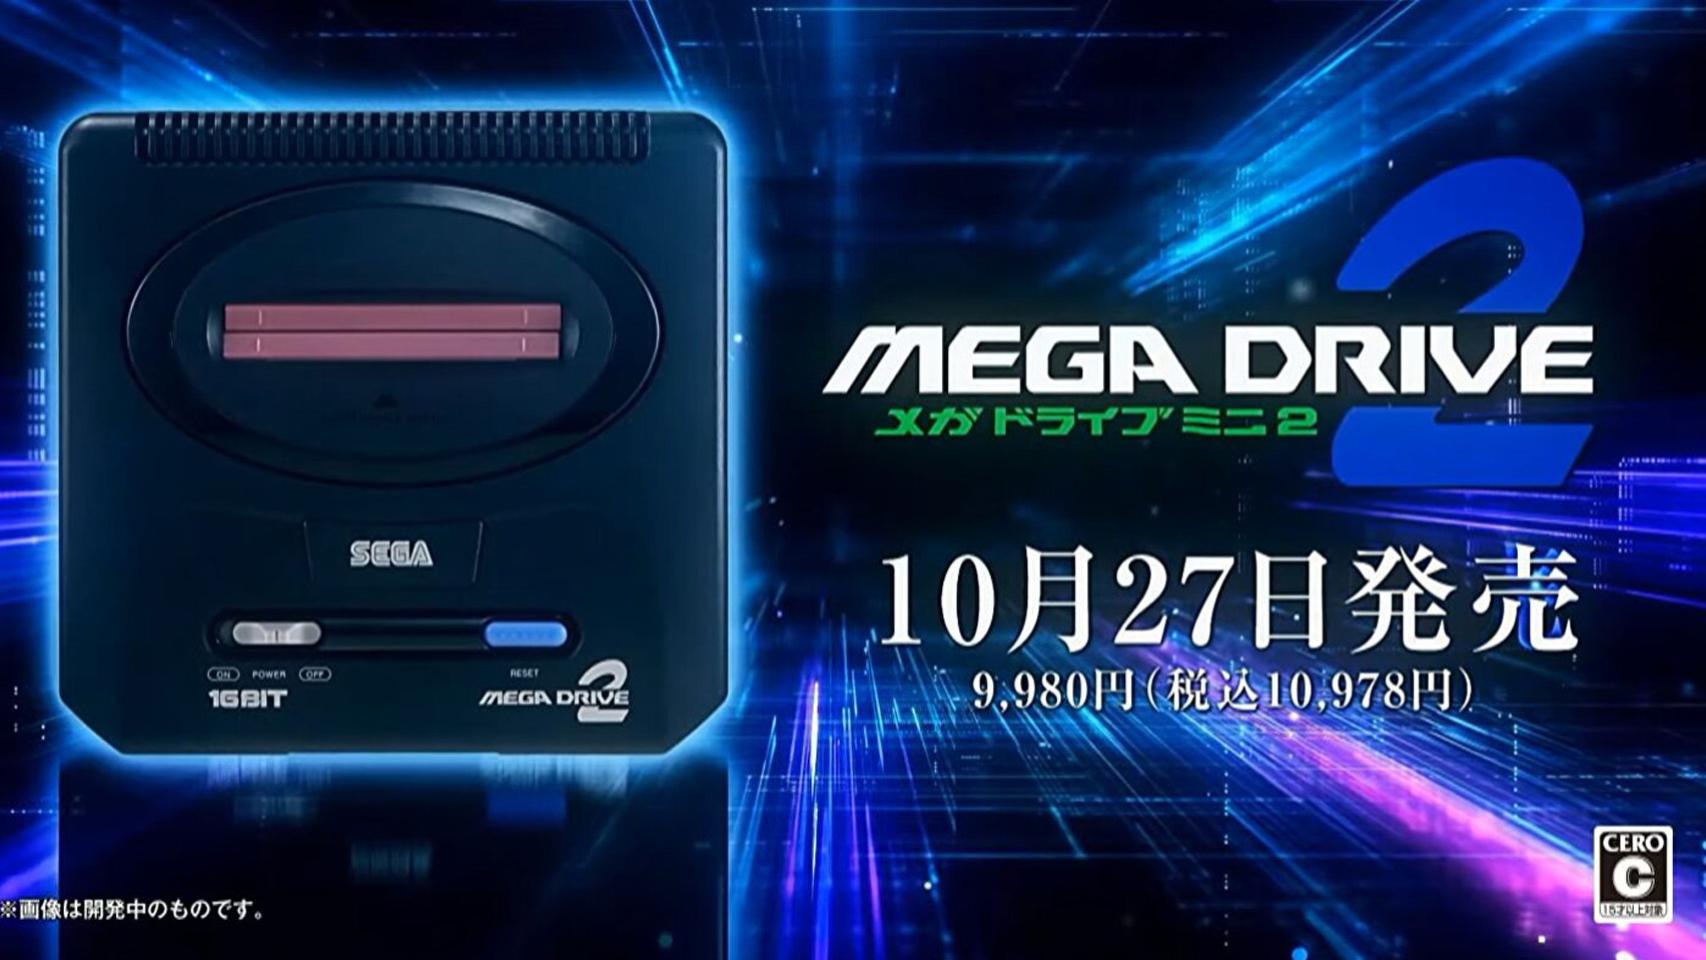 Sega megadrive Consolas de segunda mano y baratas